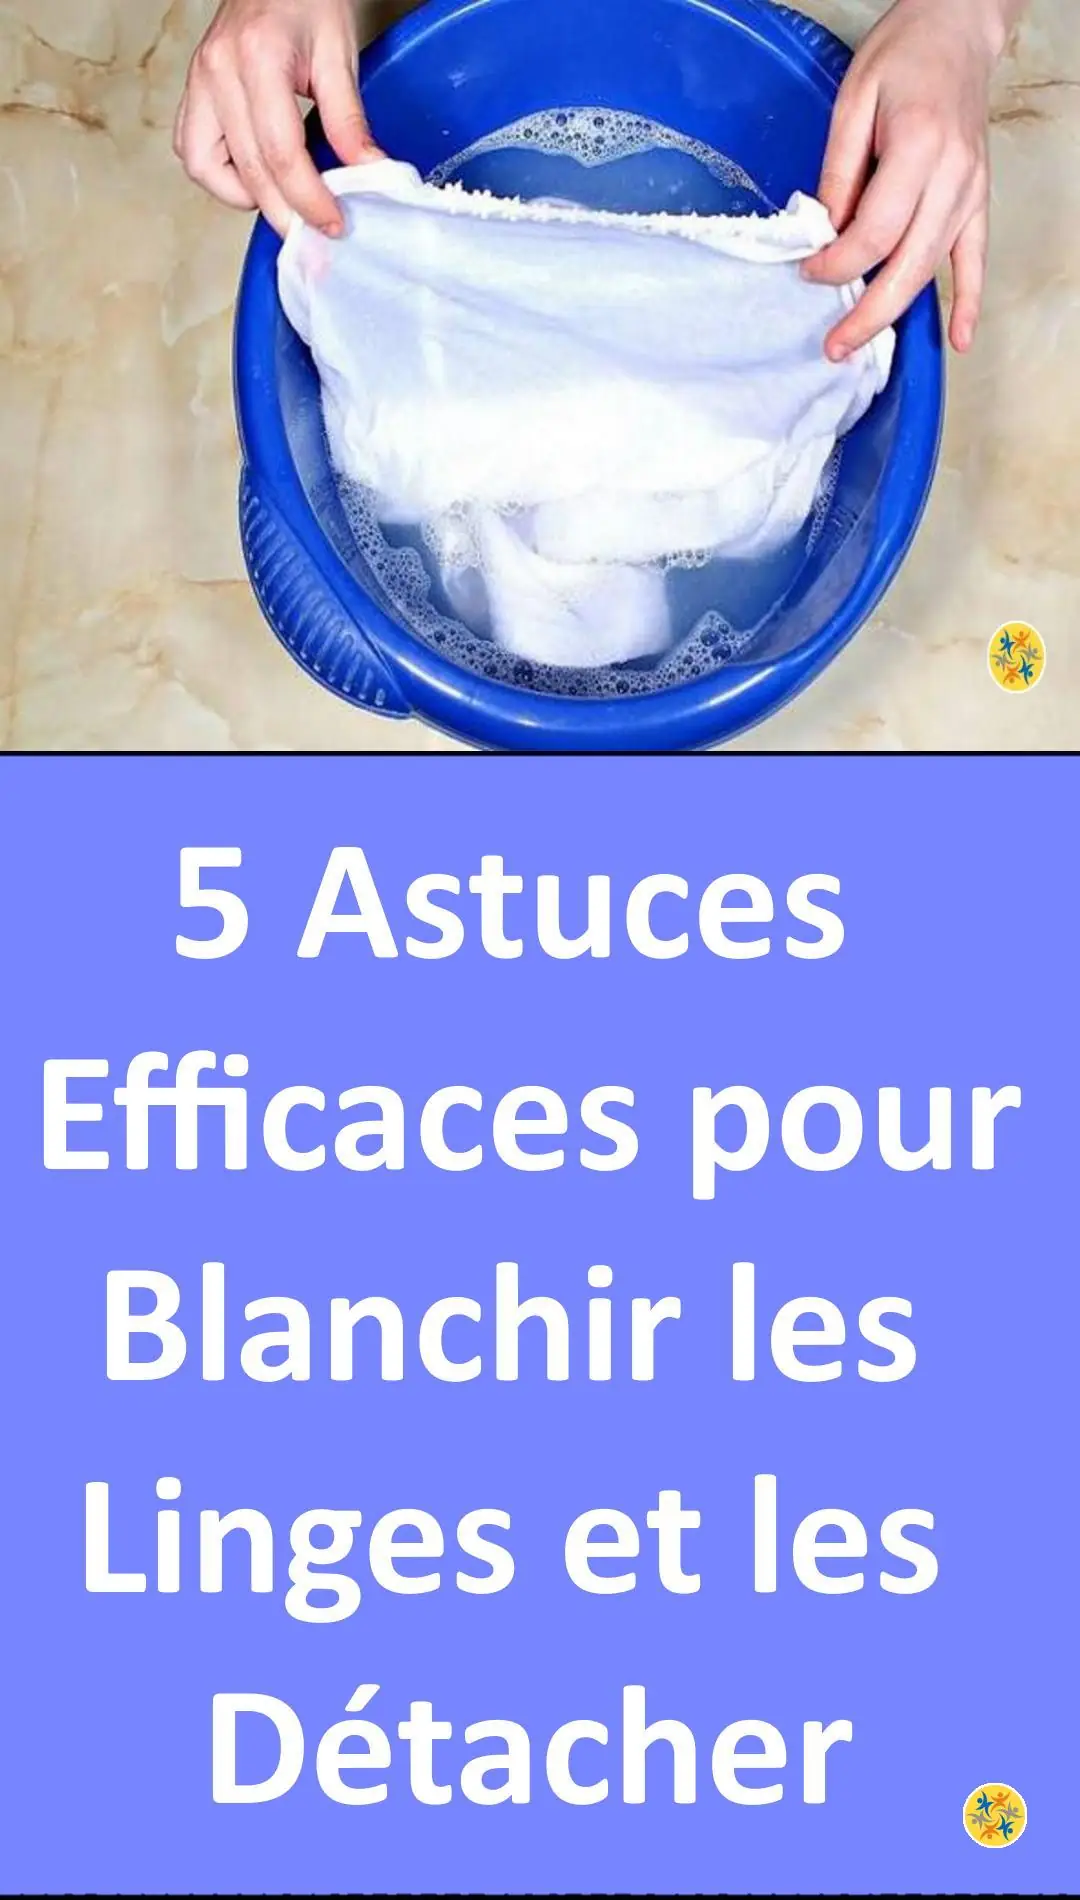 8 Astuces Magiques Pour Blanchir Le Linge Facilement (Sans Javel).